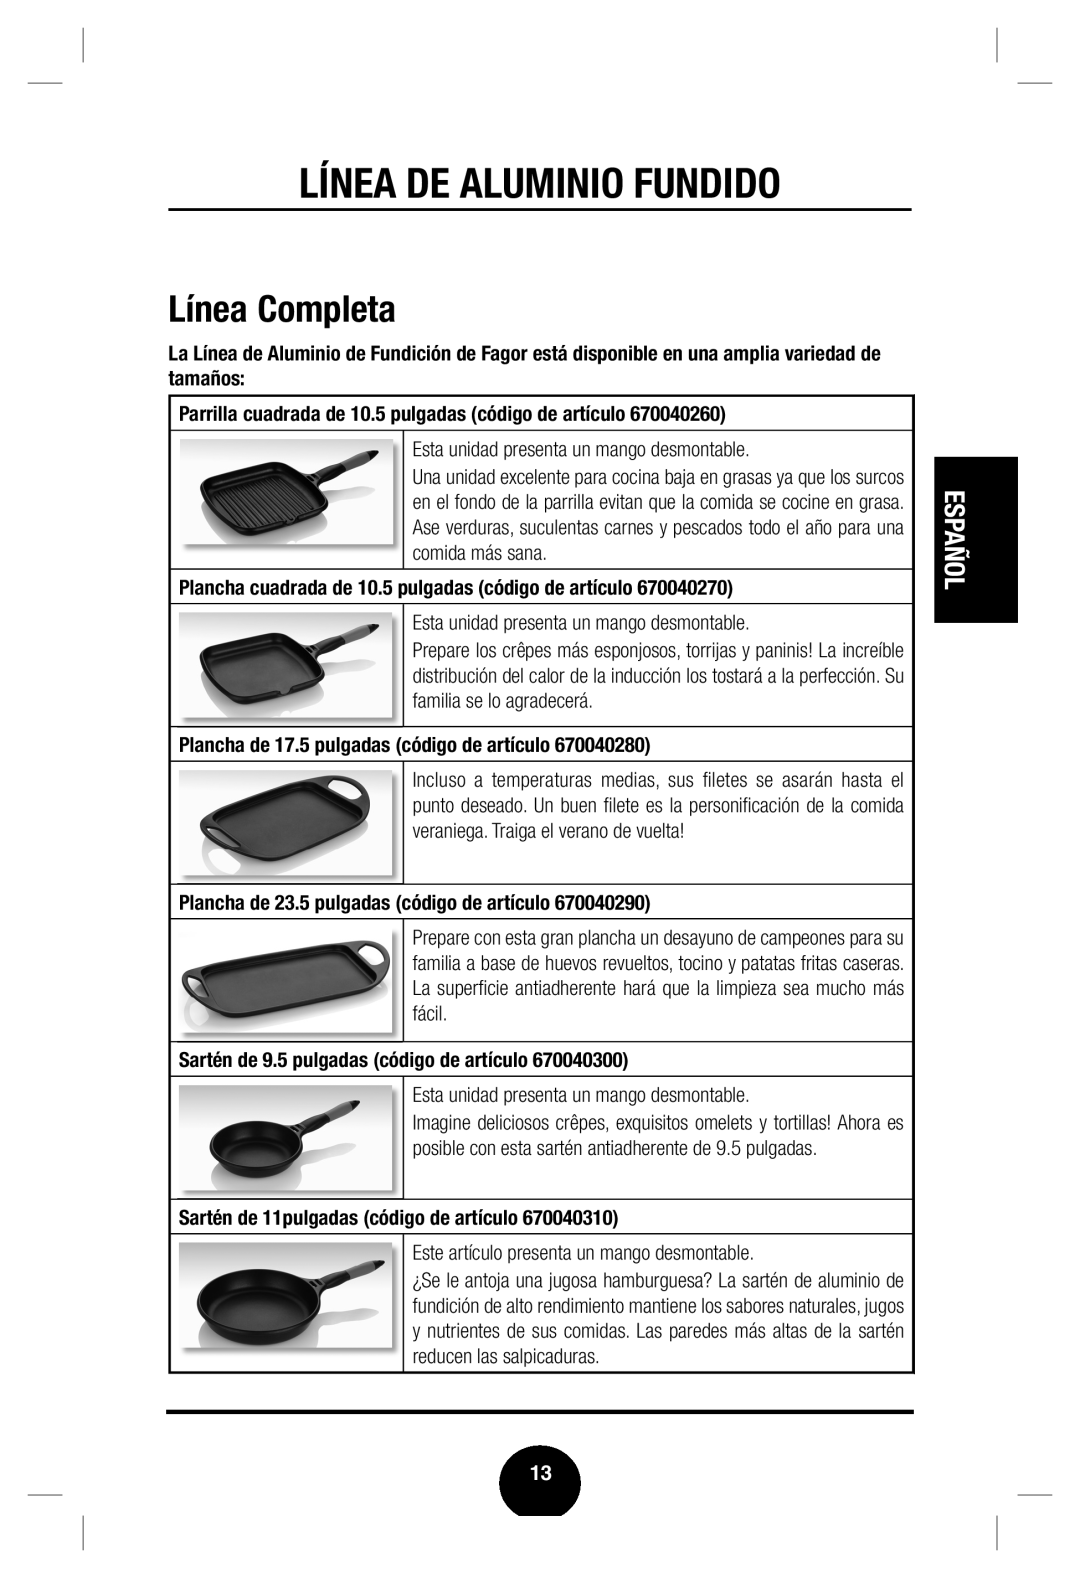 Fagor America Cast Aluminum Cookware user manual Línea Completa, Línea De Aluminio Fundido, Español 